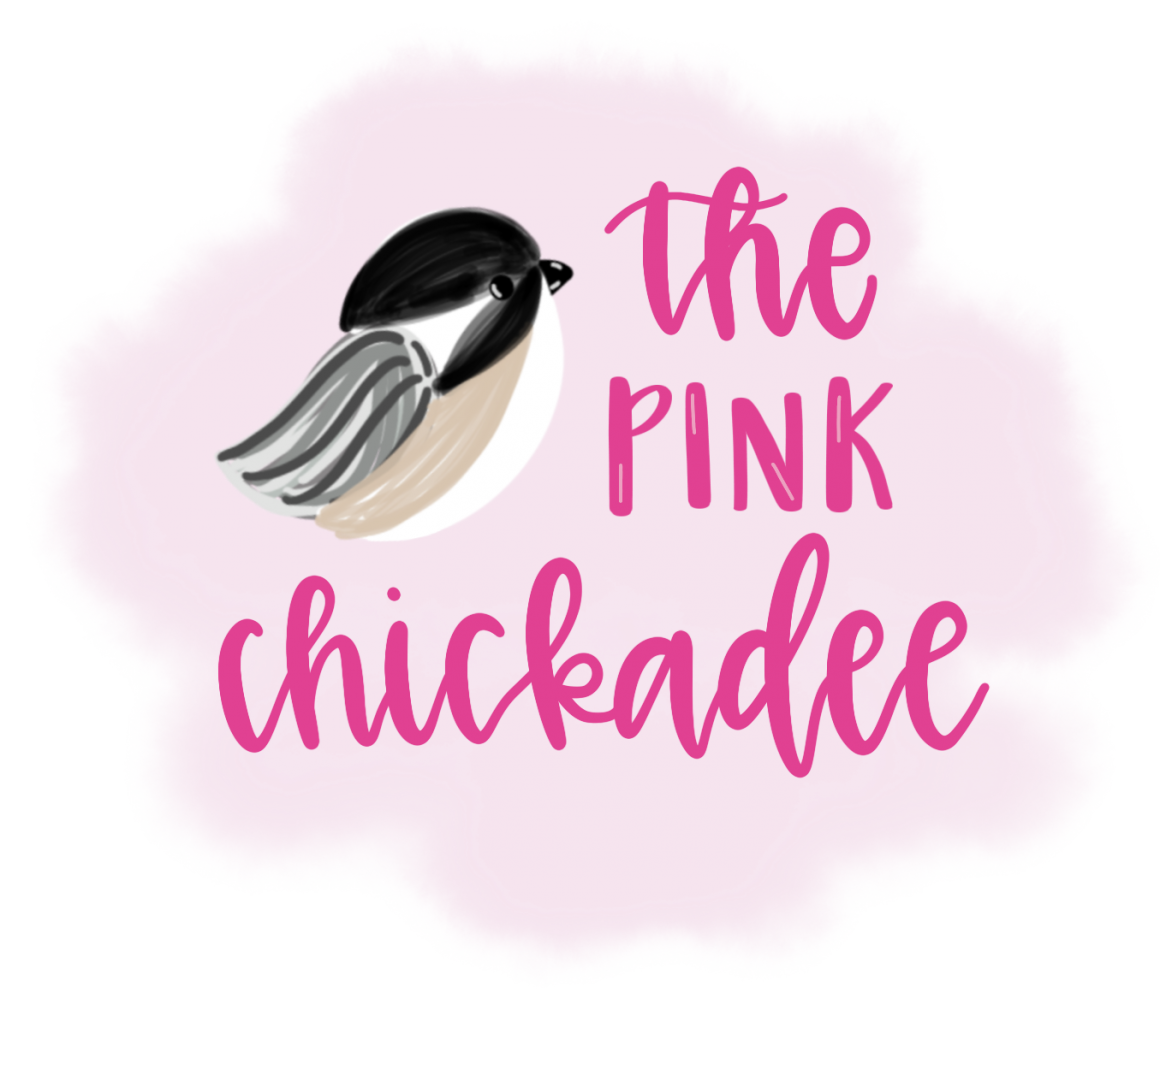 The Pink Chickadee